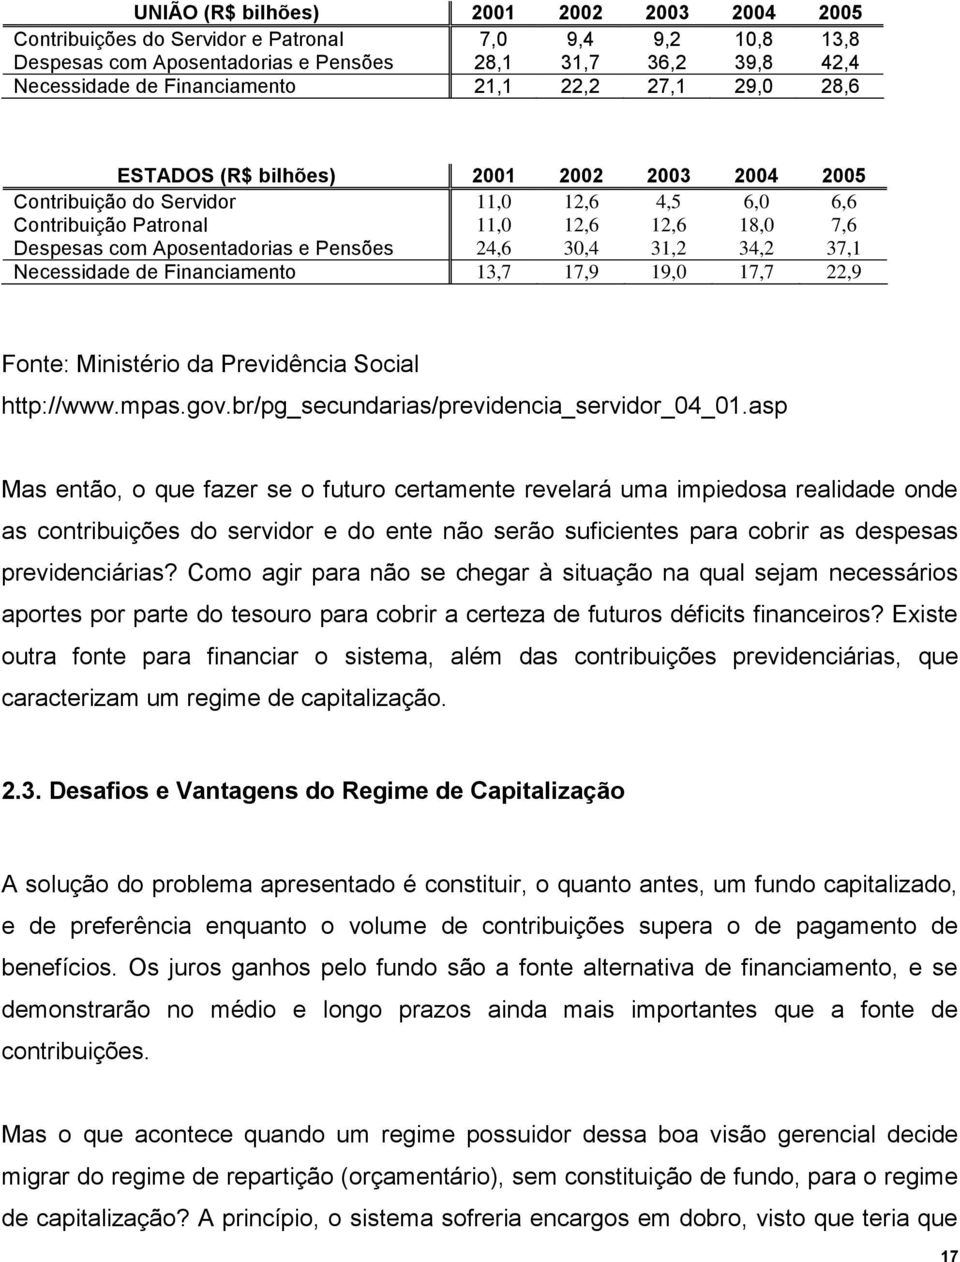 24,6 30,4 31,2 34,2 37,1 Necessidade de Financiamento 13,7 17,9 19,0 17,7 22,9 Fonte: Ministério da Previdência Social http://www.mpas.gov.br/pg_secundarias/previdencia_servidor_04_01.